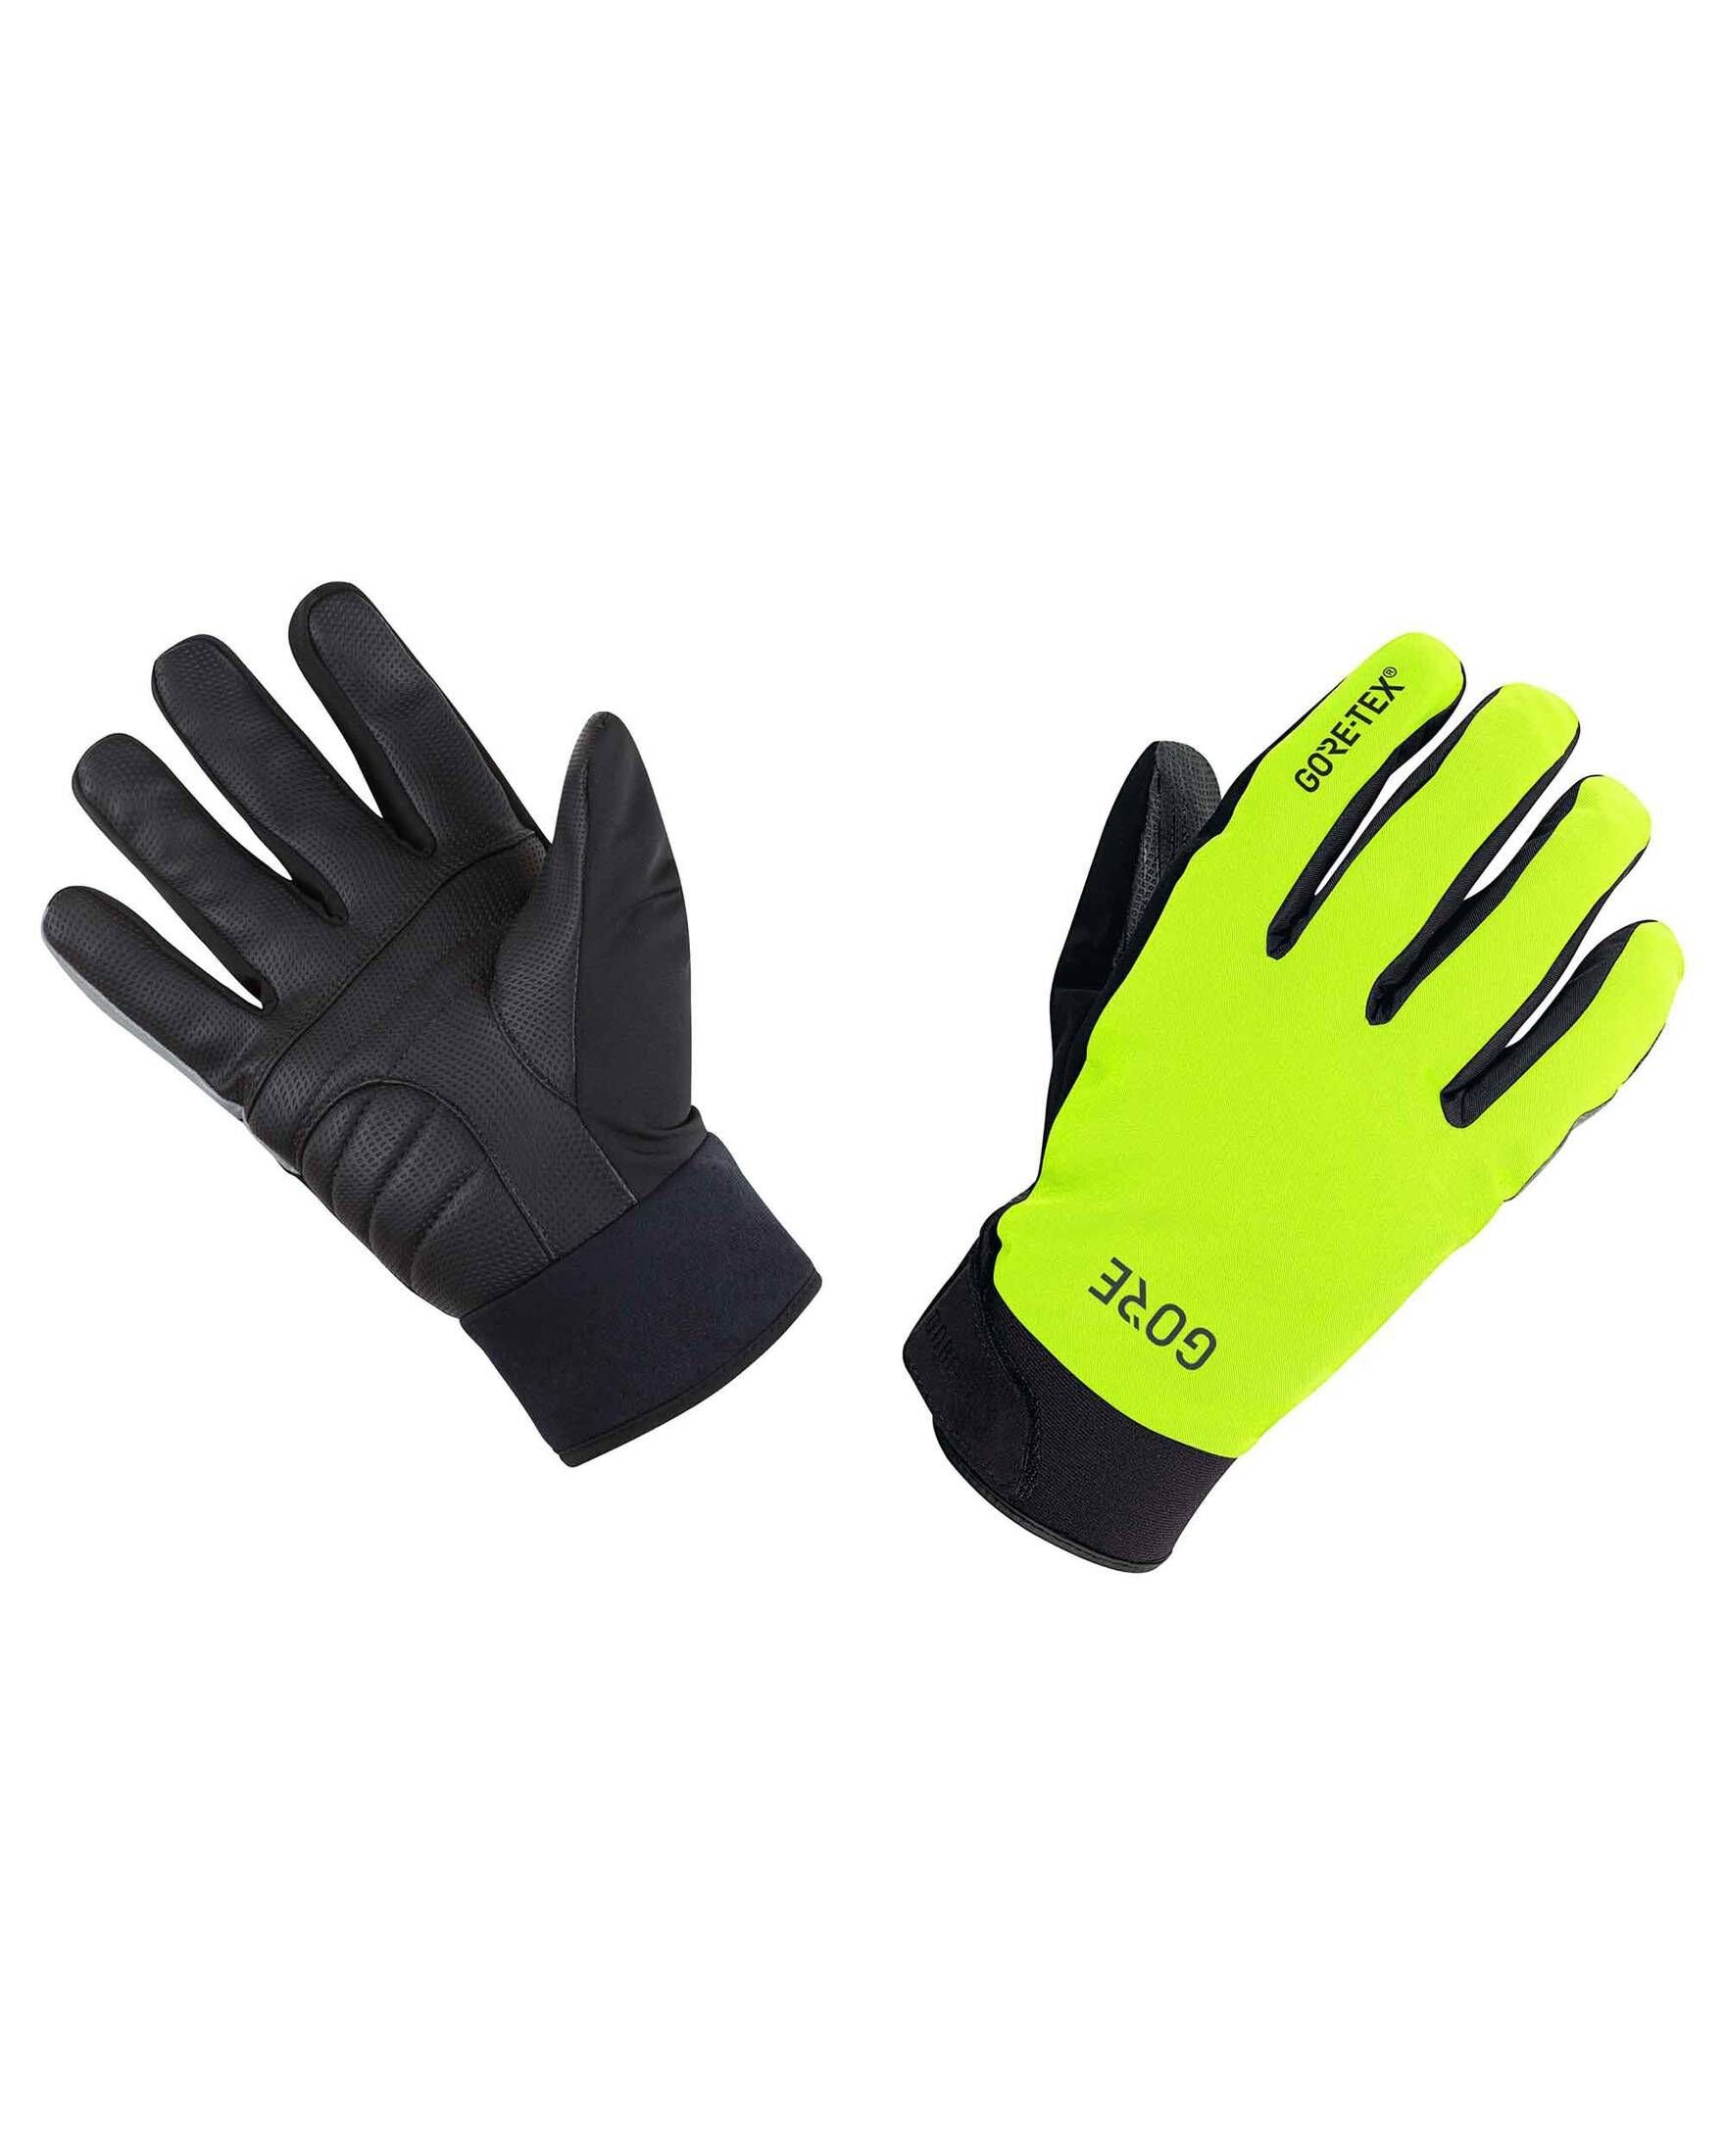 Handschuhe GORE-TEX GLOVES Thermo GORE® Wear schwarz/gelb C5 Herren (703) Fahrradhandschuhe